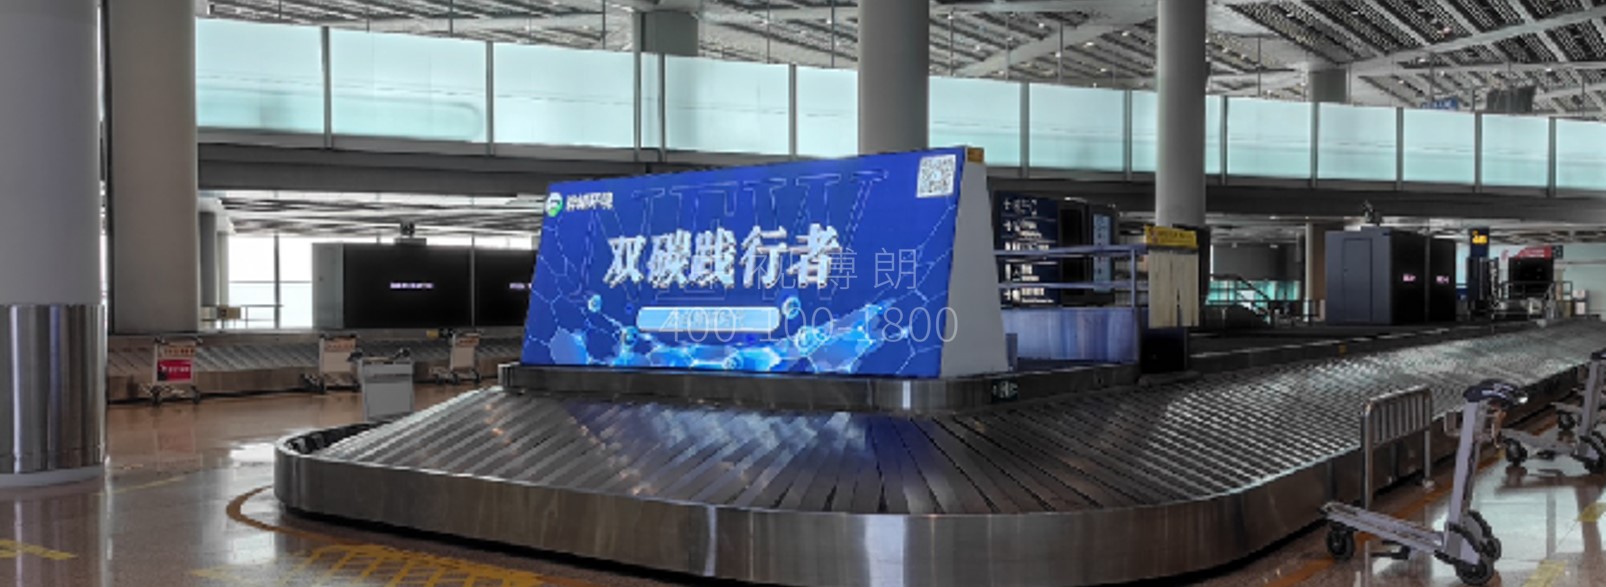 北京首都机场广告-T3到达行李厅双面灯箱套装